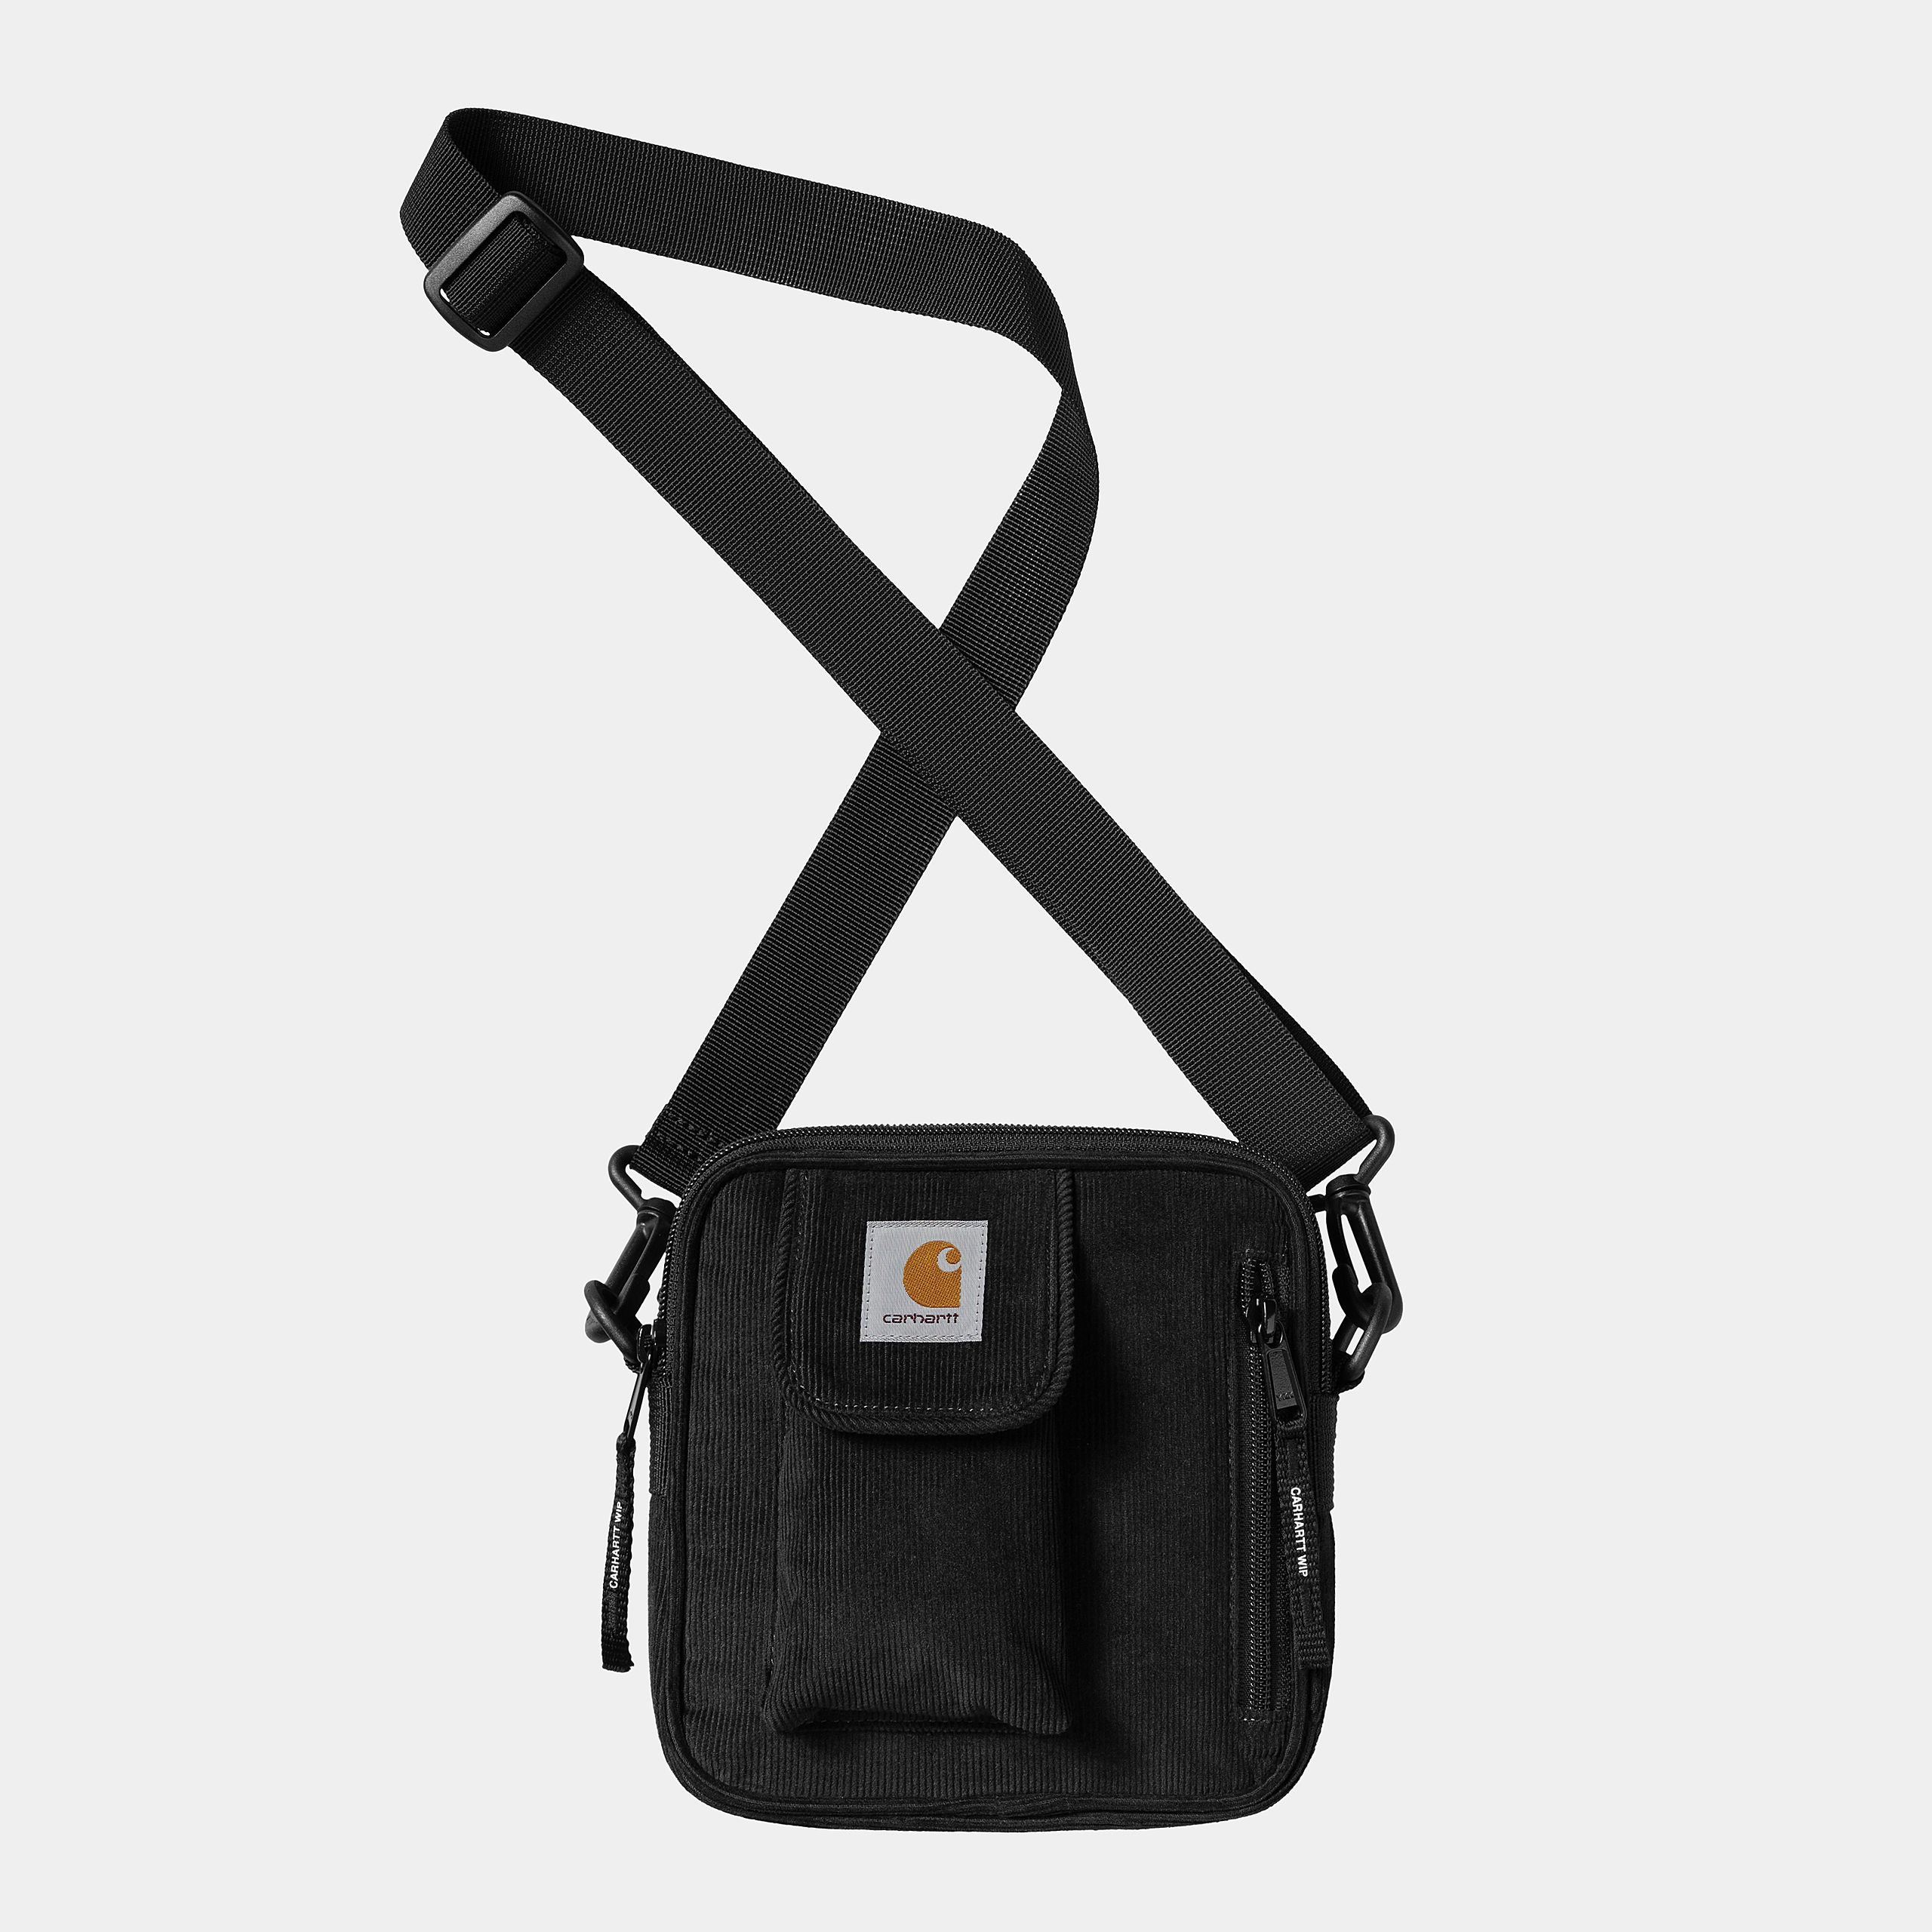 Carhartt WIP Mens Essentials Cord Bag - Black